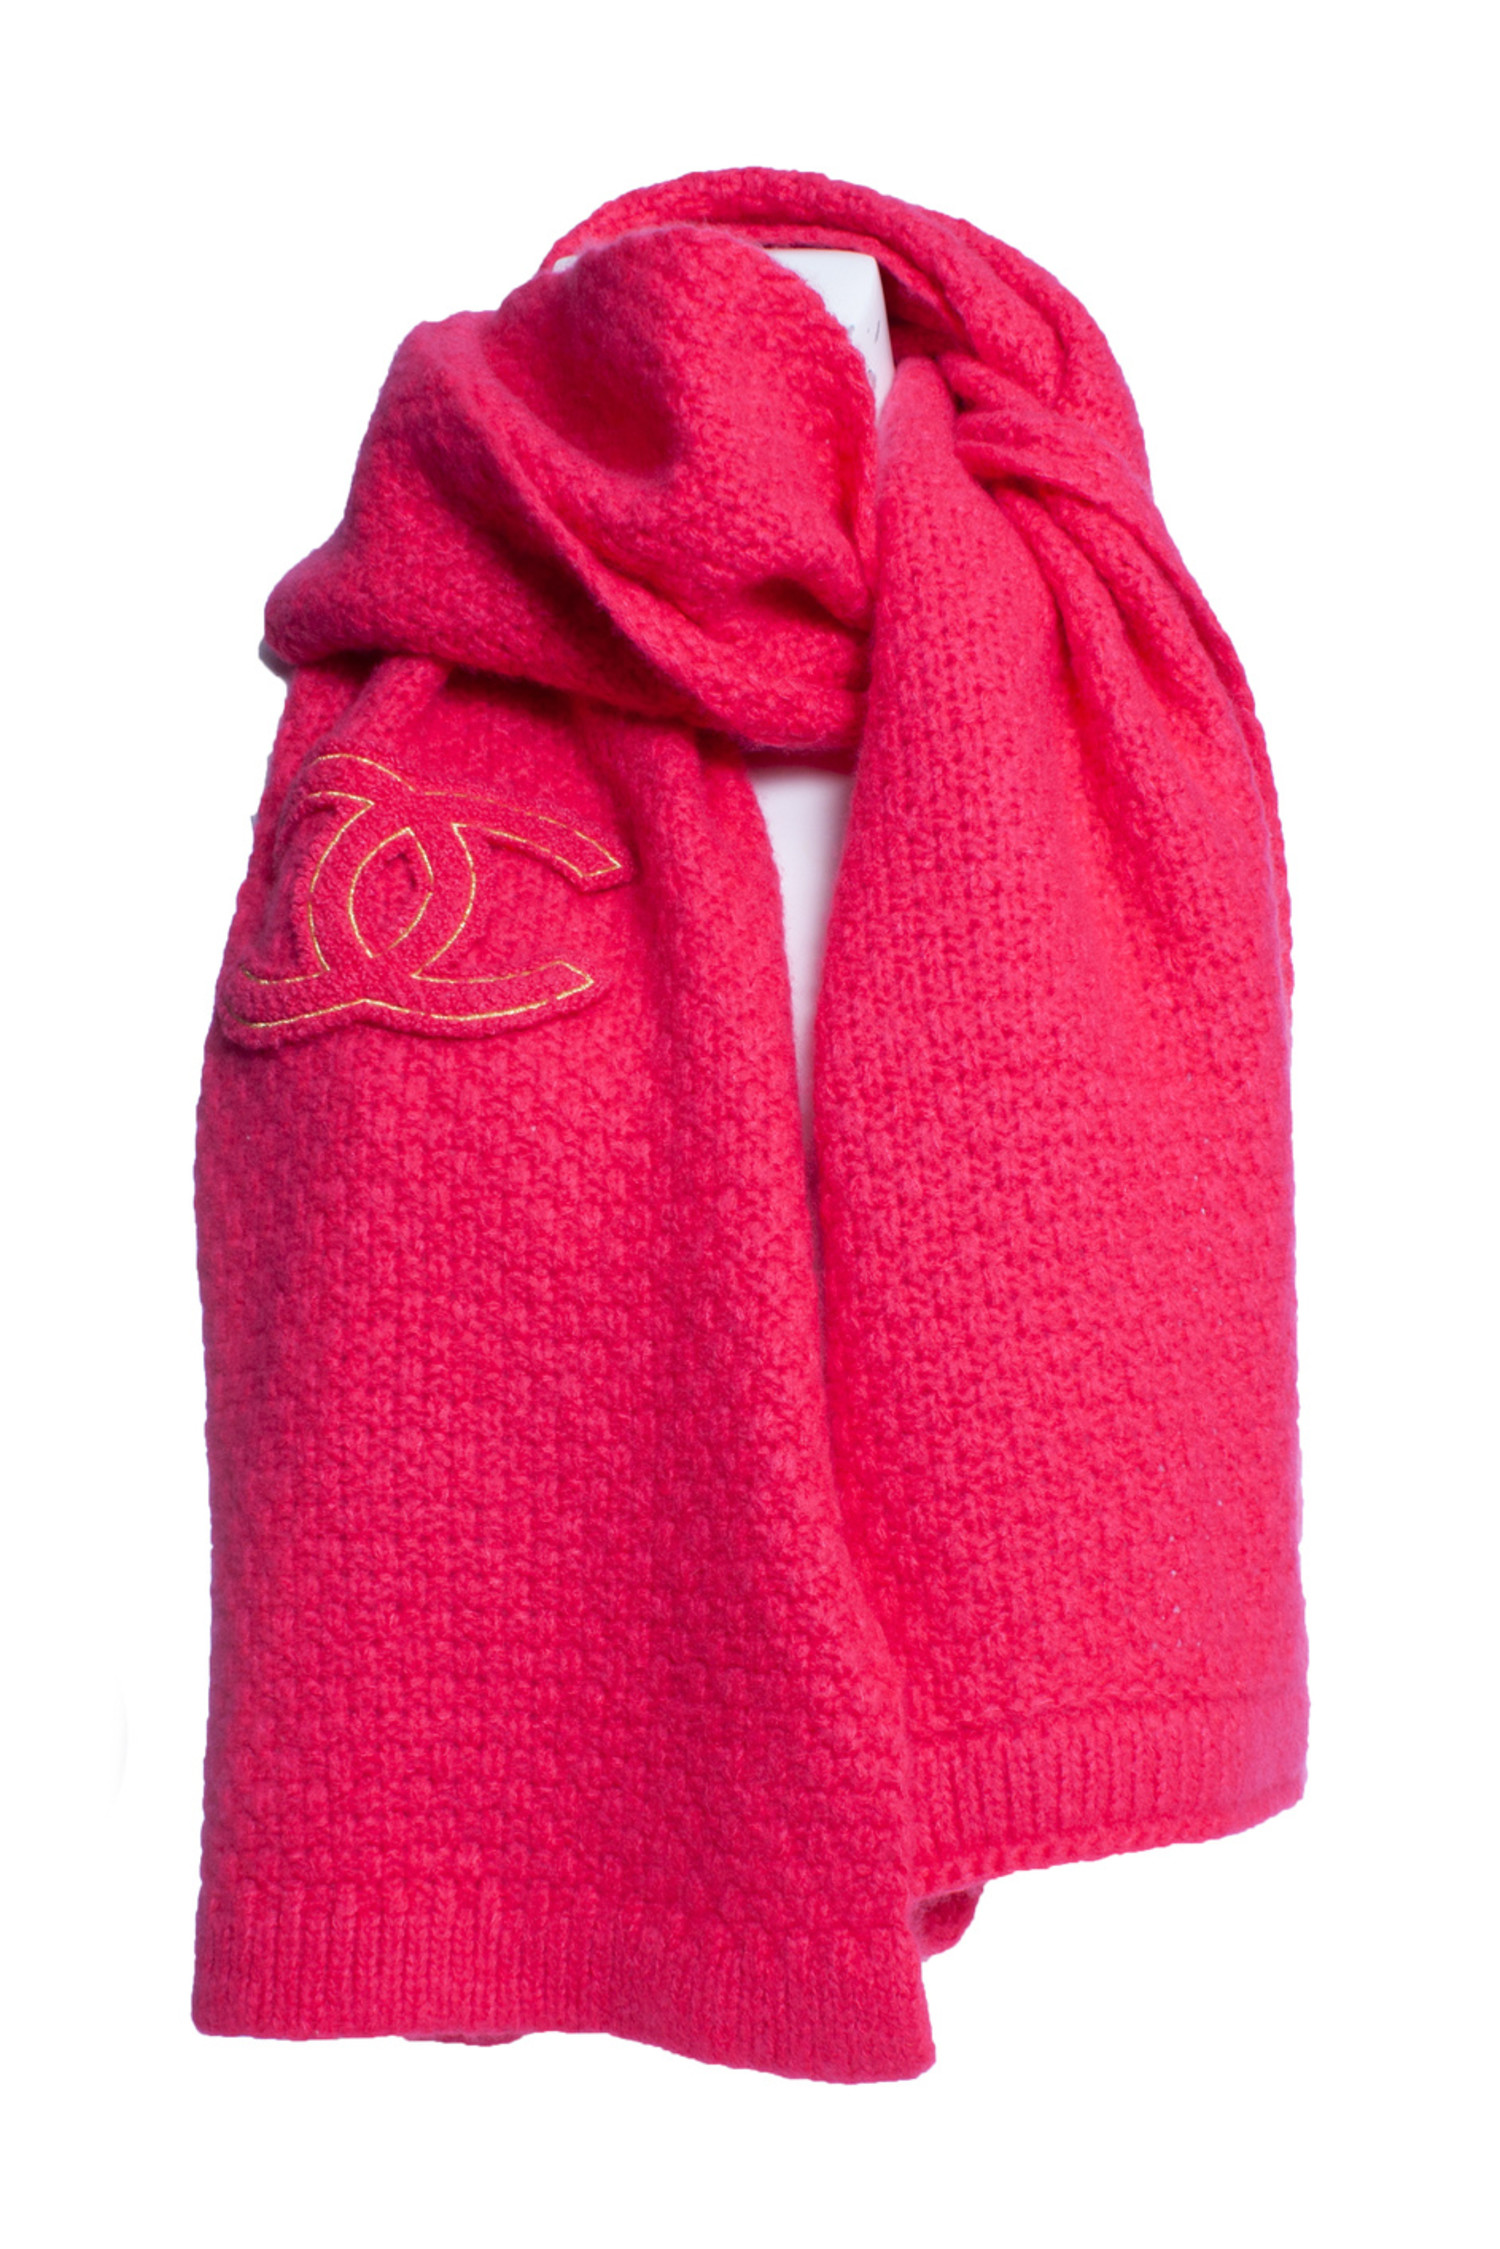 Dubbelzinnig Uitschakelen Trekken Chanel, Neon roze cashmere sjaal - Unique Designer Pieces